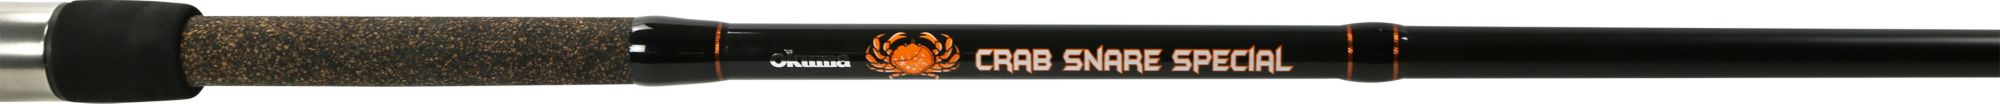 Okuma Crab Snare Special Rod